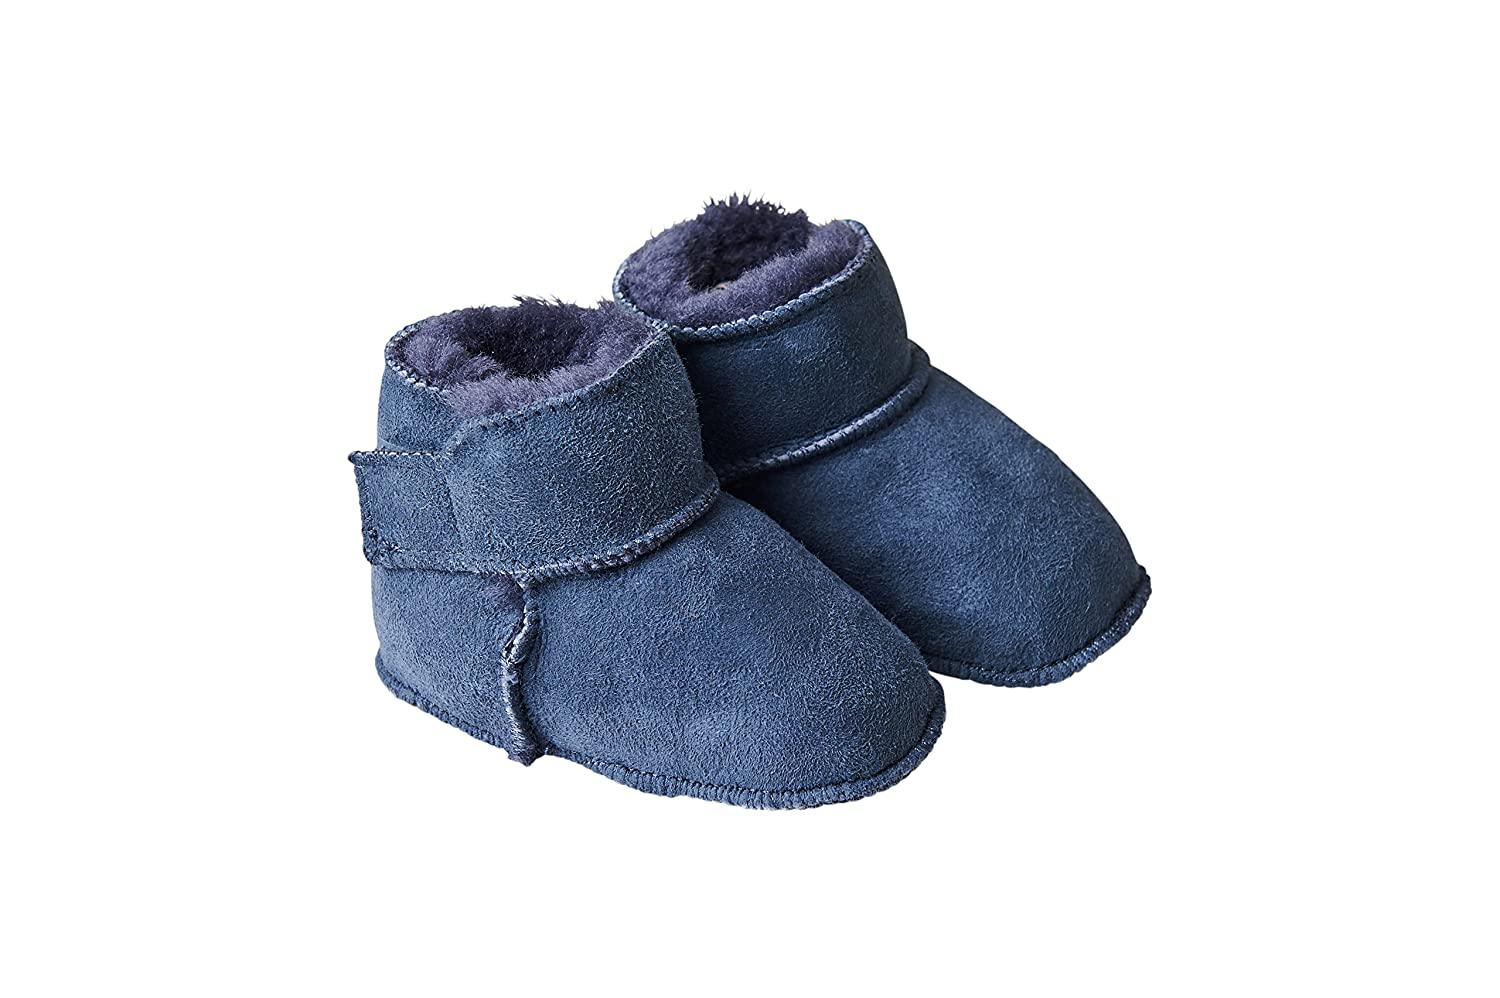 Fellhof 5101 Cuddly Baby Boots, Size 1 (16/17) 22/23